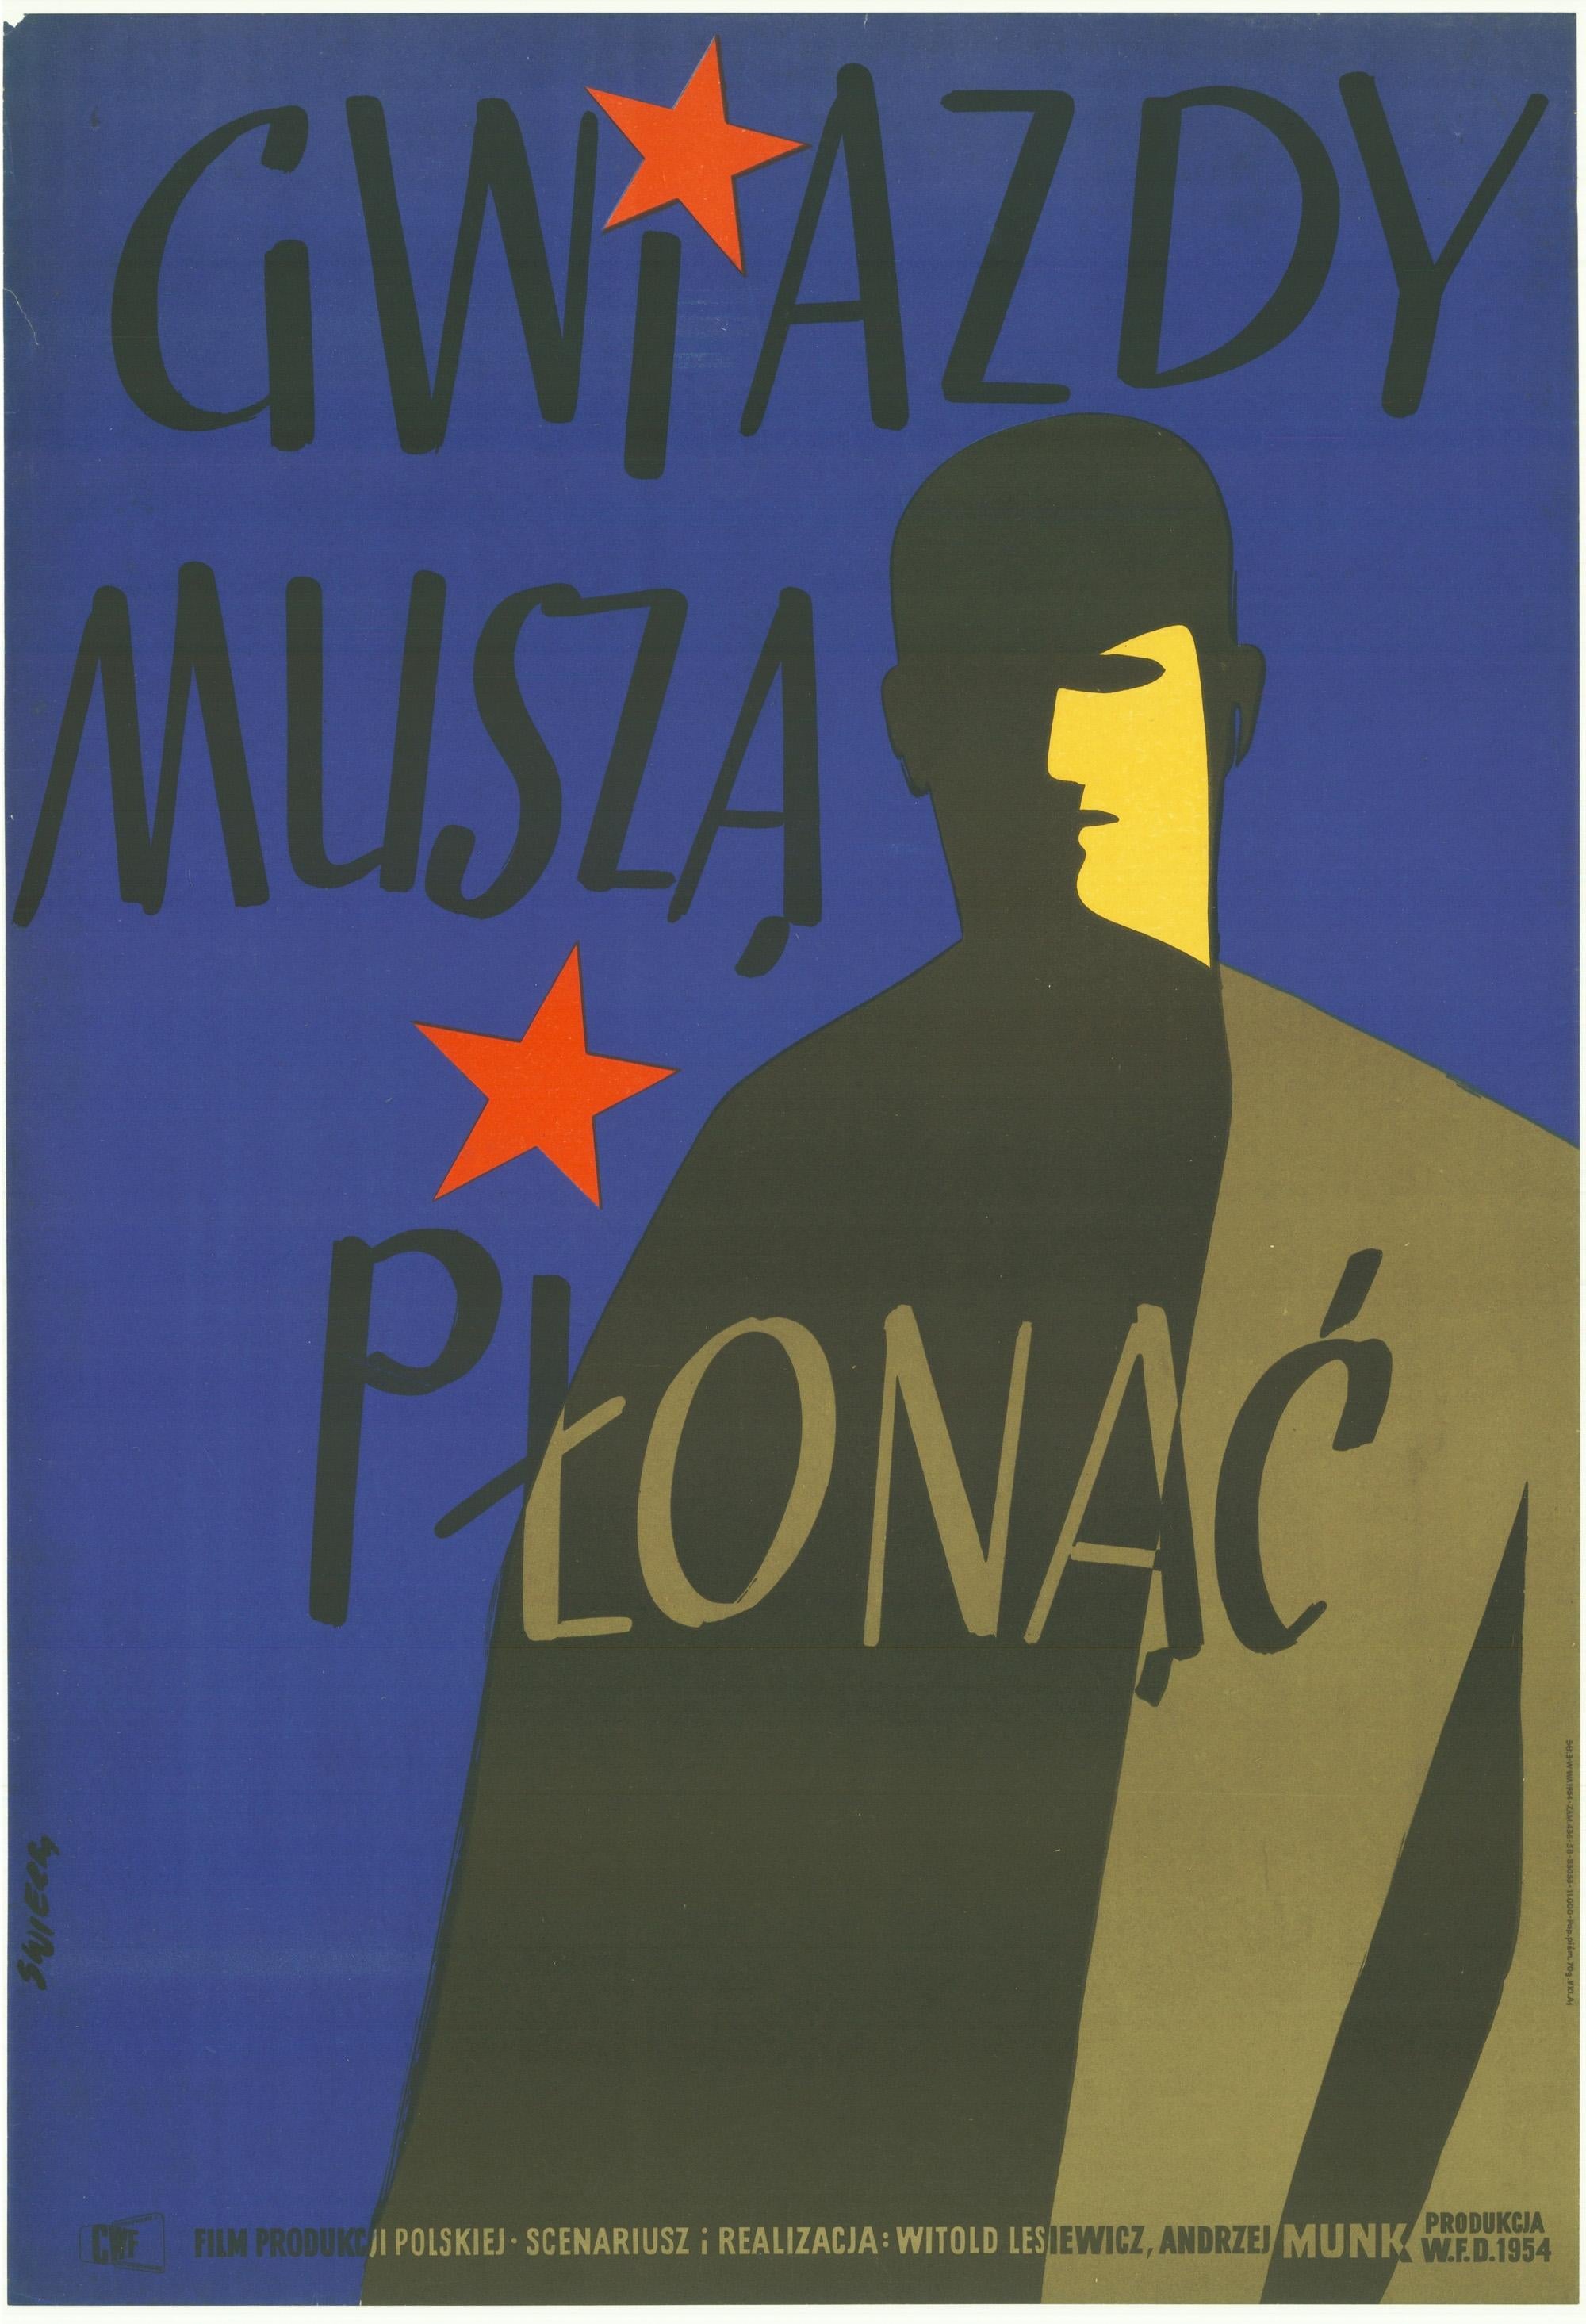 Other Vintage Polish Gwiazdy Musza Plonac by Waldermar Swierzy, 1954 For Sale